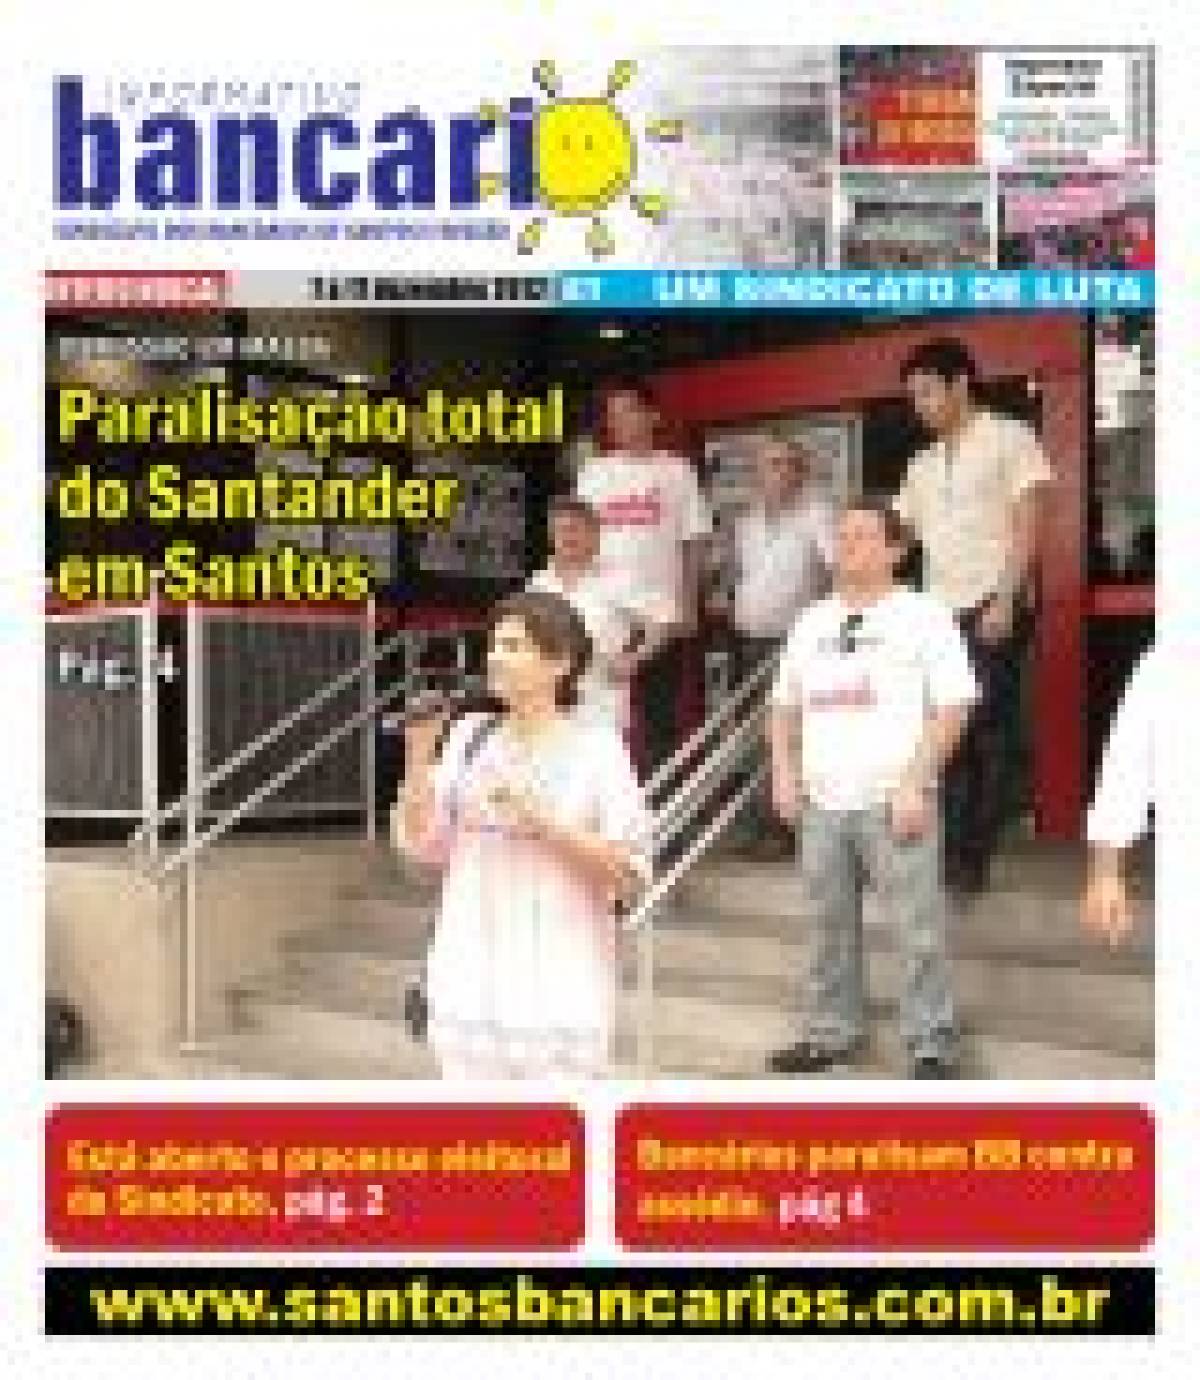 Paralisação total do Santander em Santos